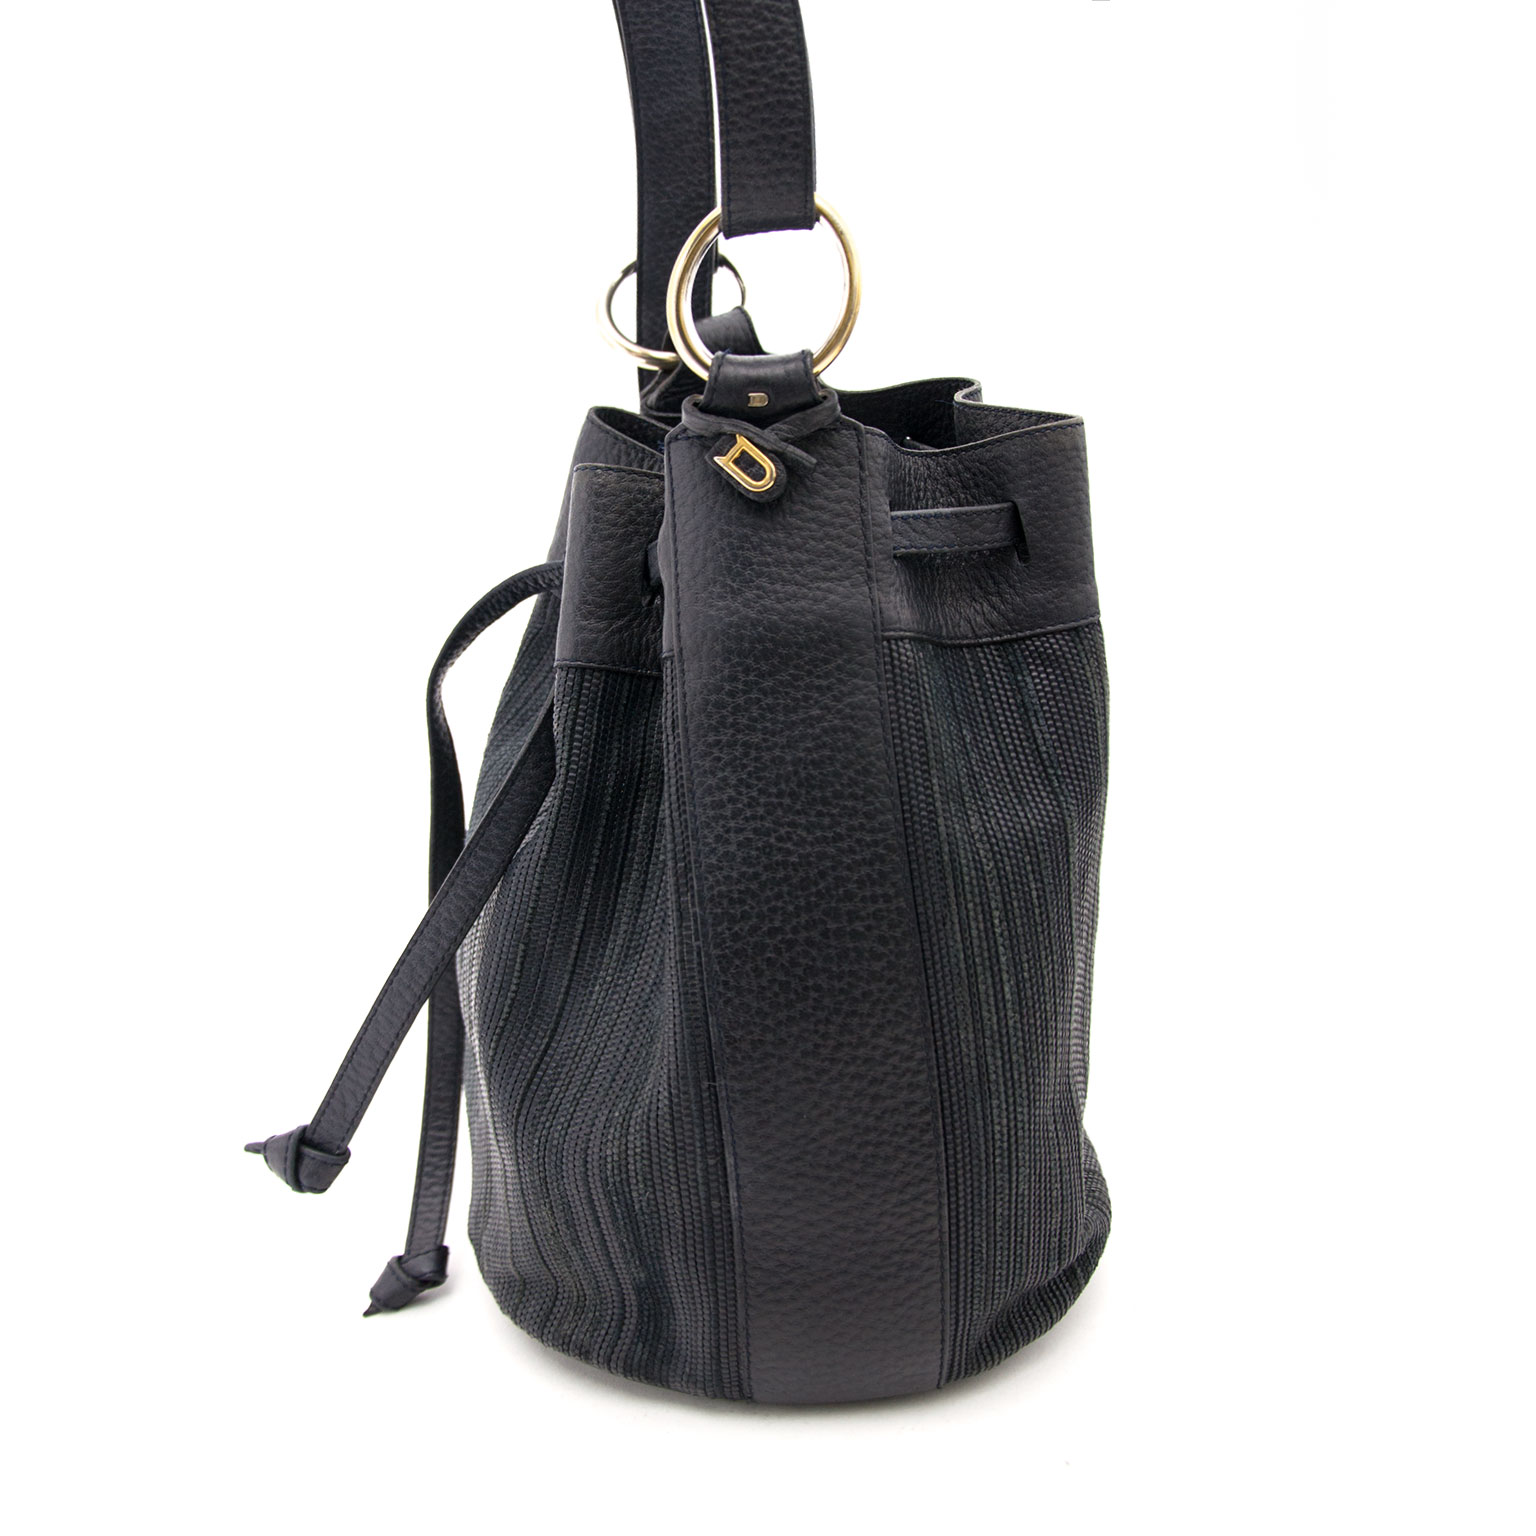 Shop Authentic Vintage Luxury Designer Handbags Online. Vind tweedehands designer handtassen ...